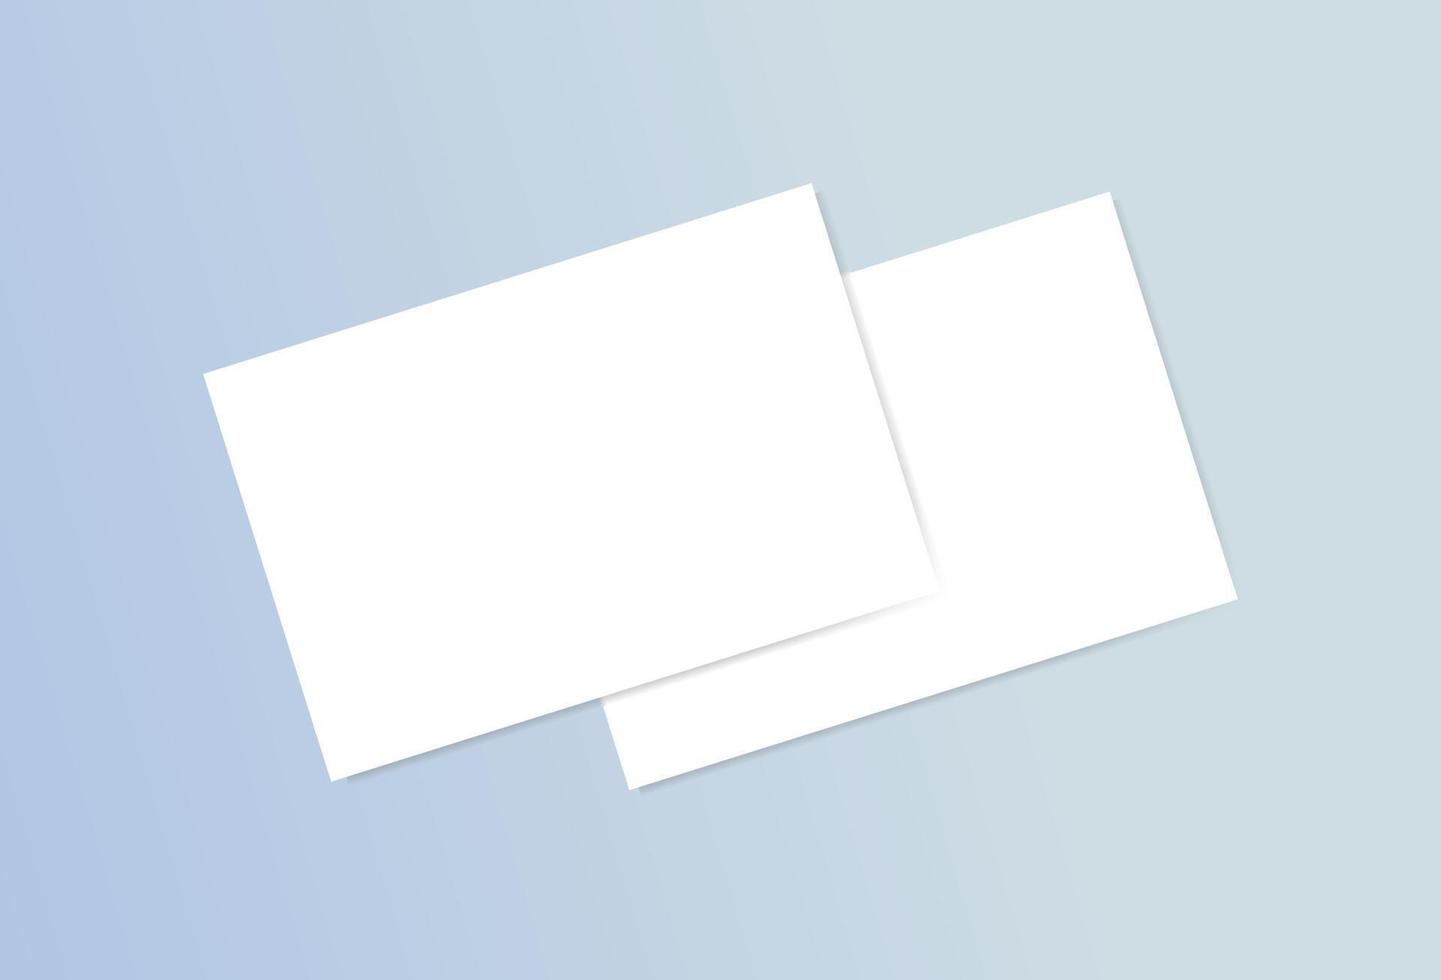 modelo de conjunto de maquete de papel de cartão de visita em branco realista para convite de promoção de produto de marca ilustração de documento corporativo vitrine de apresentação de escritório vetor